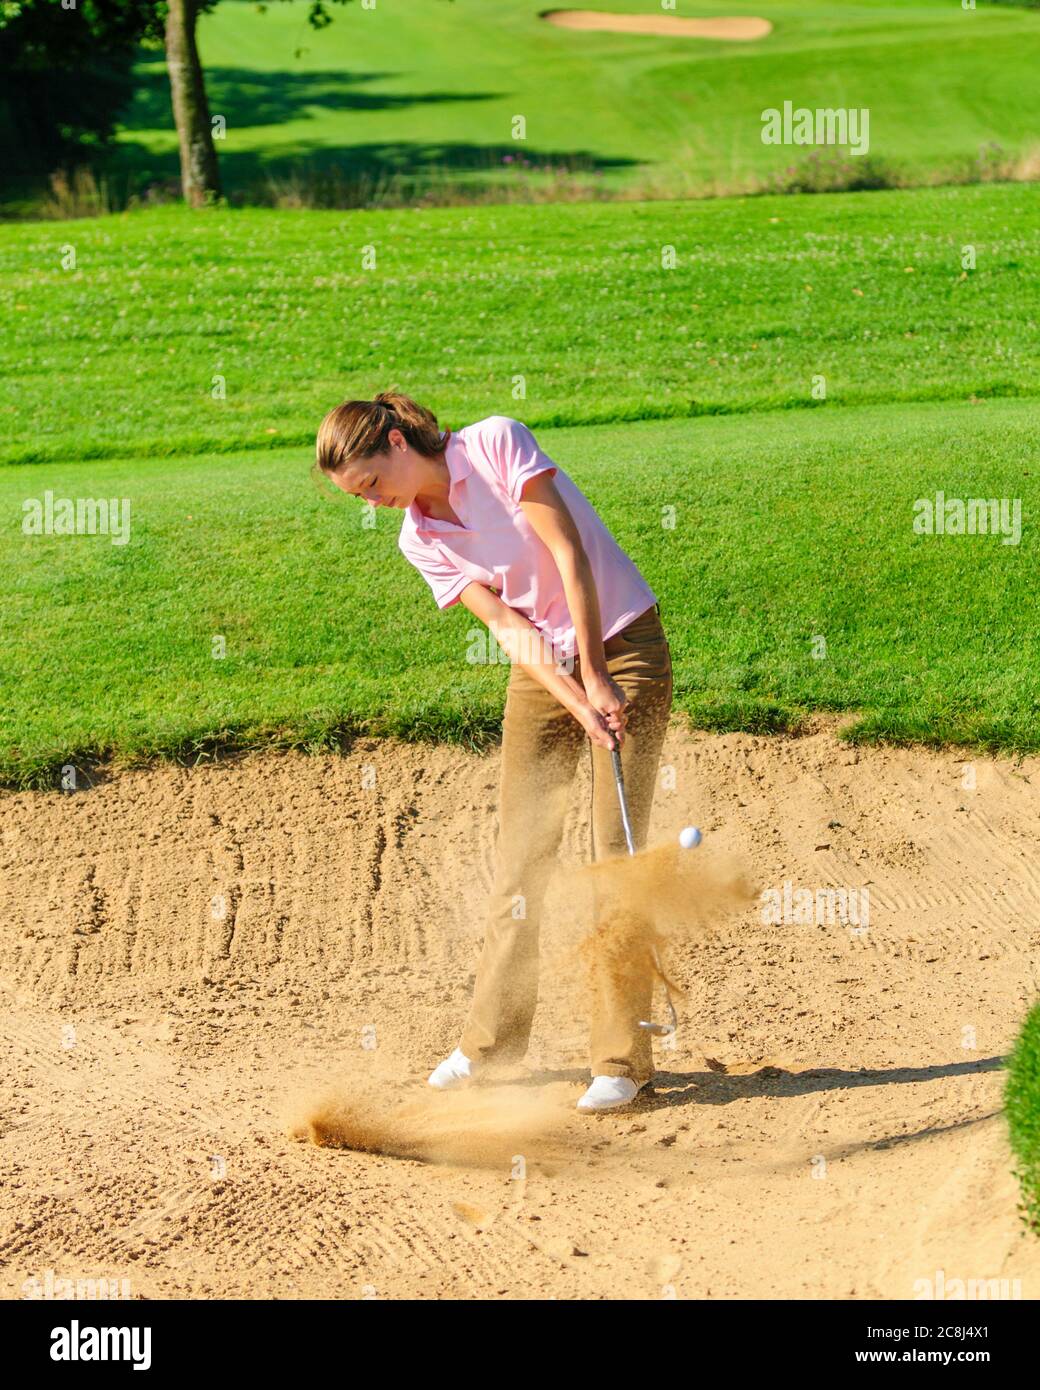 Jeune joueuse de golf jouant au ballon dans un bunker de sable Banque D'Images